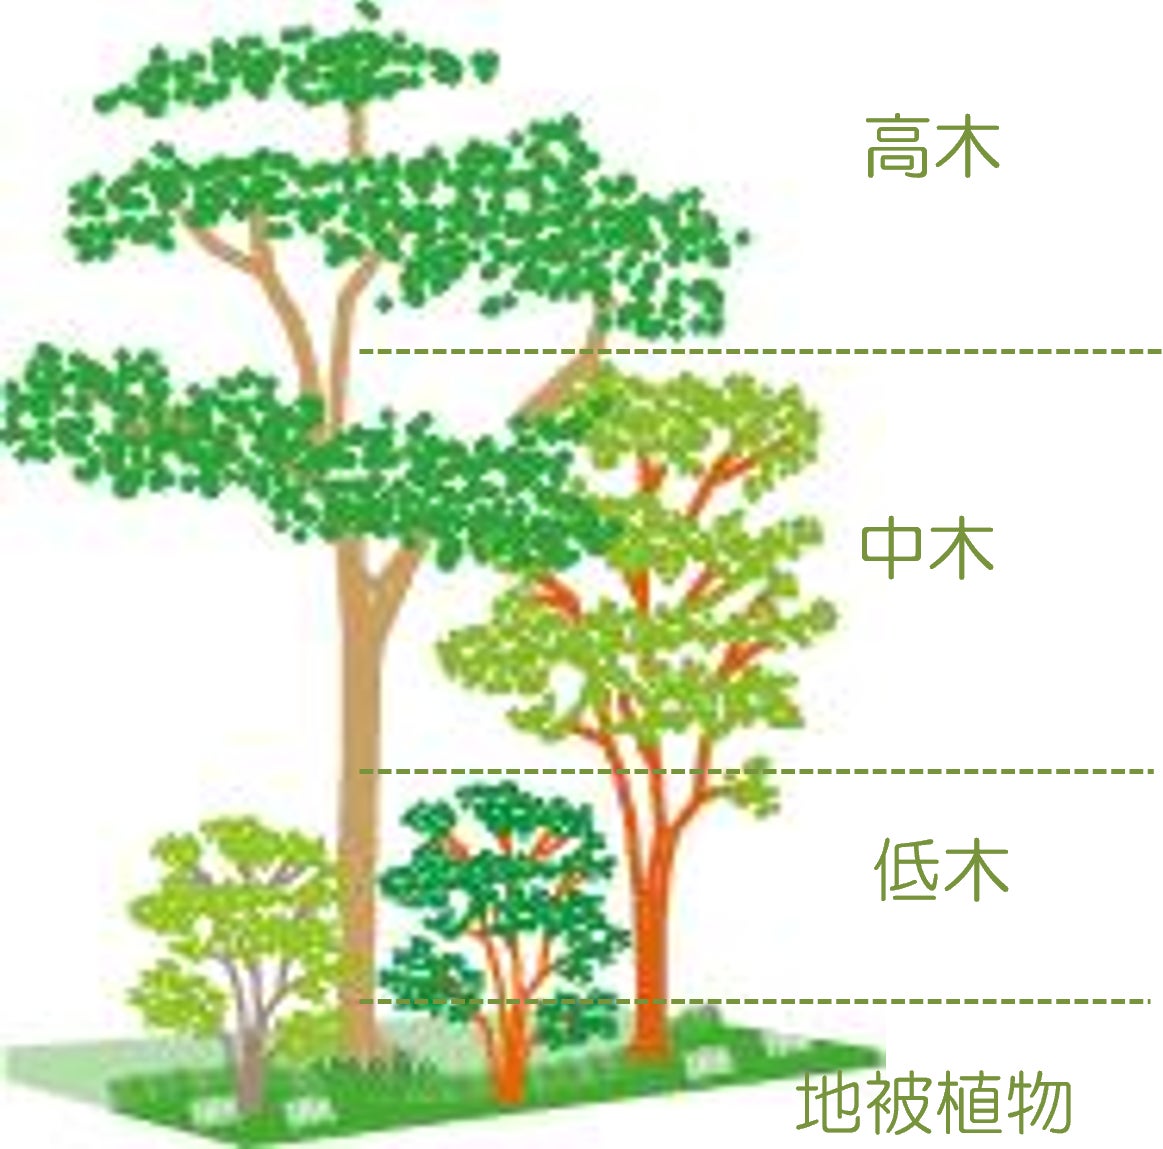 環境省による生物多様性保全のしくみ 自然共生サイトに「あさひ・いのちの森」認定のサブ画像3_「まちもり」の基本となる植栽の階層構造